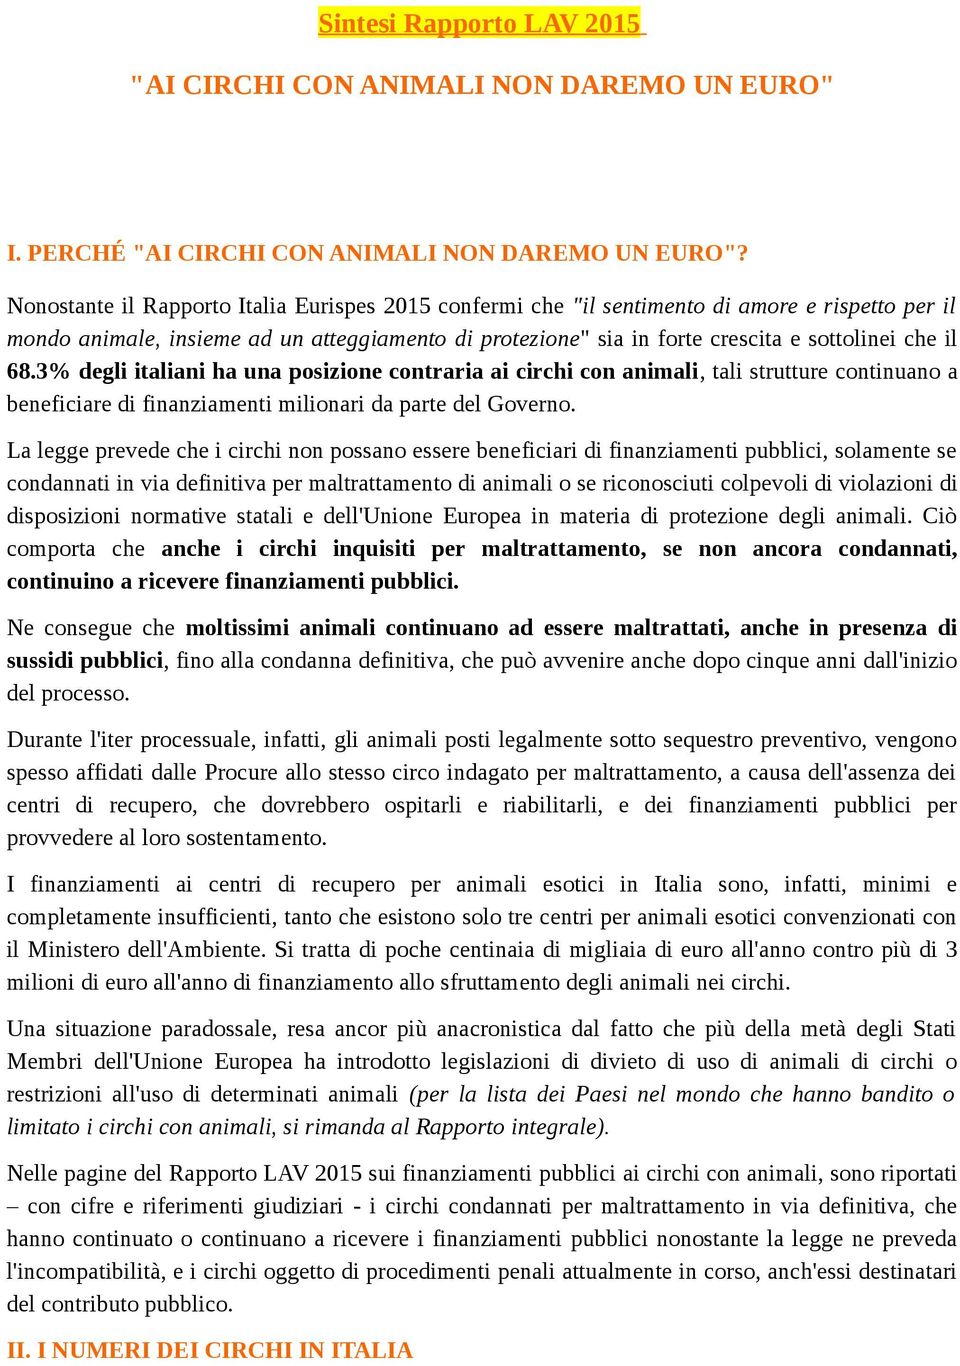 68.3% degli italiani ha una posizione contraria ai circhi con animali, tali strutture continuano a beneficiare di finanziamenti milionari da parte del Governo.